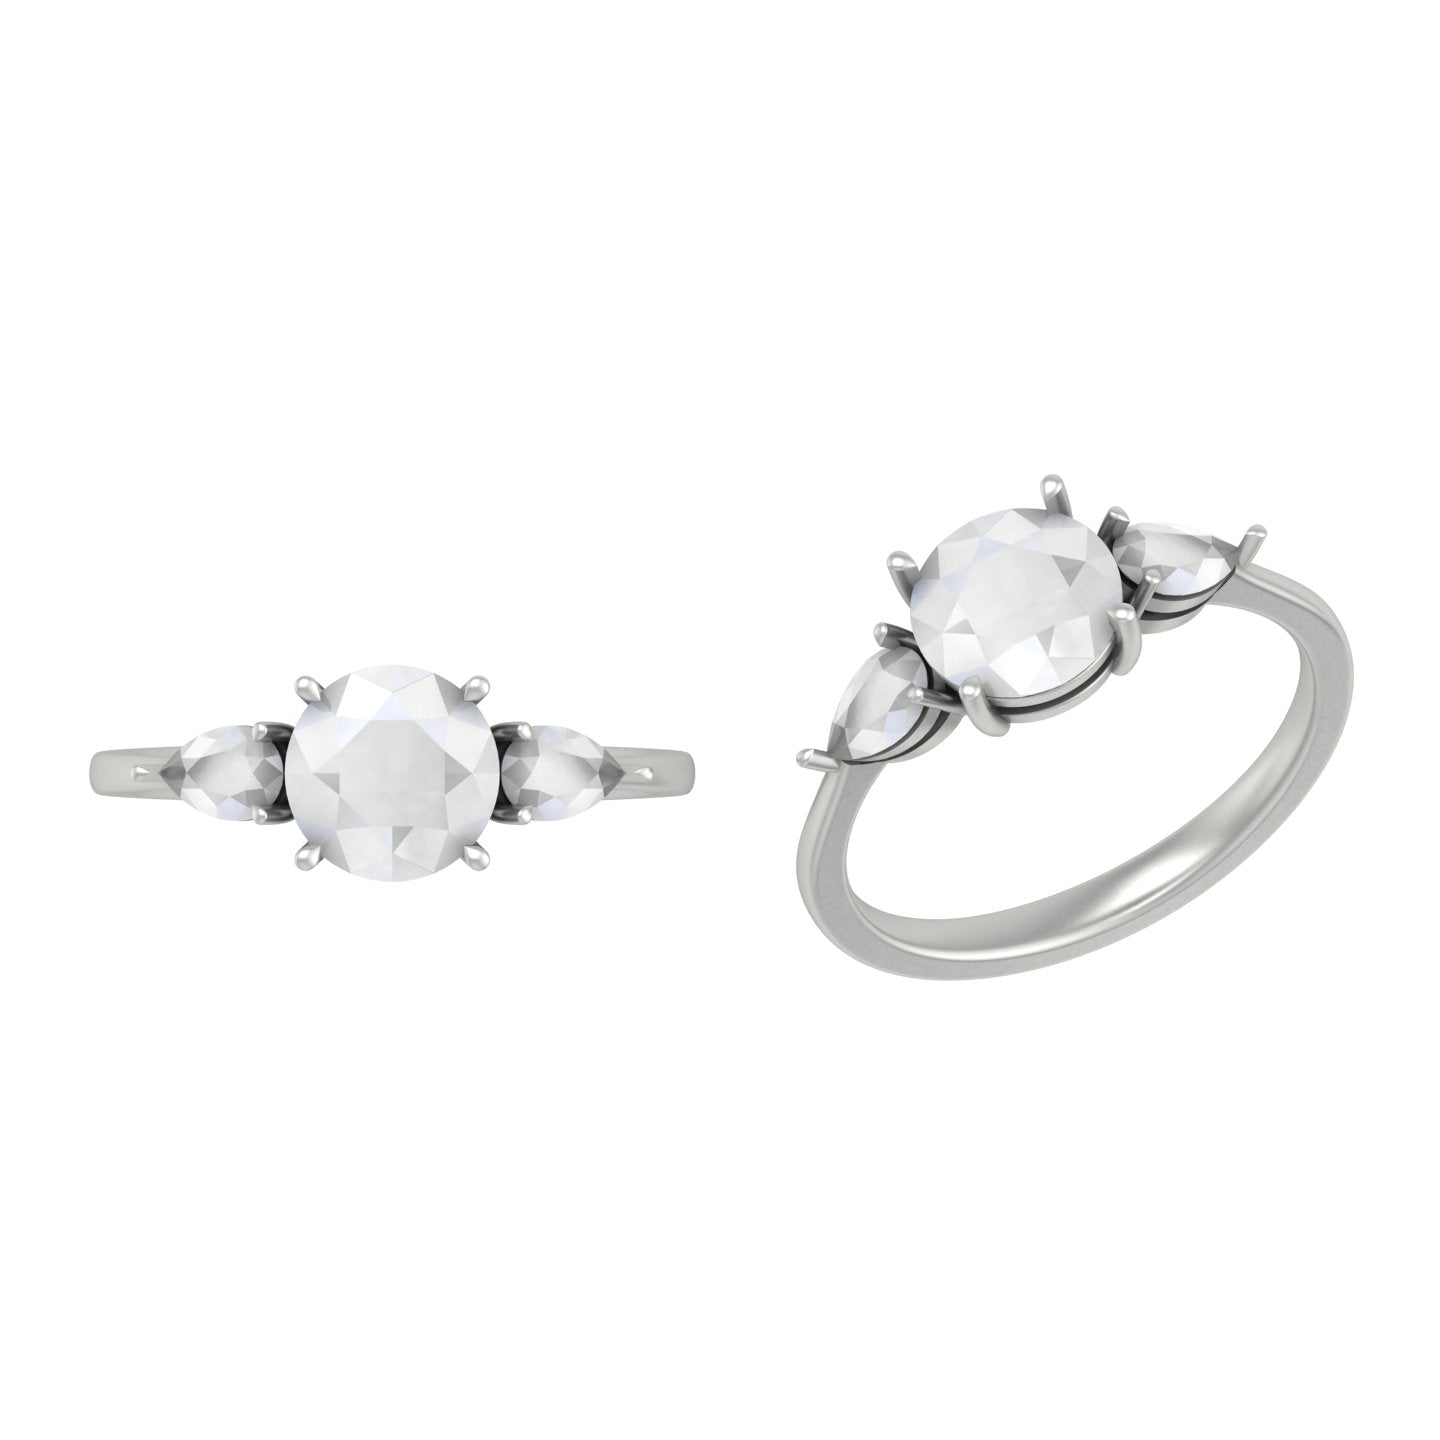 Fluxor lab diamond ring for women